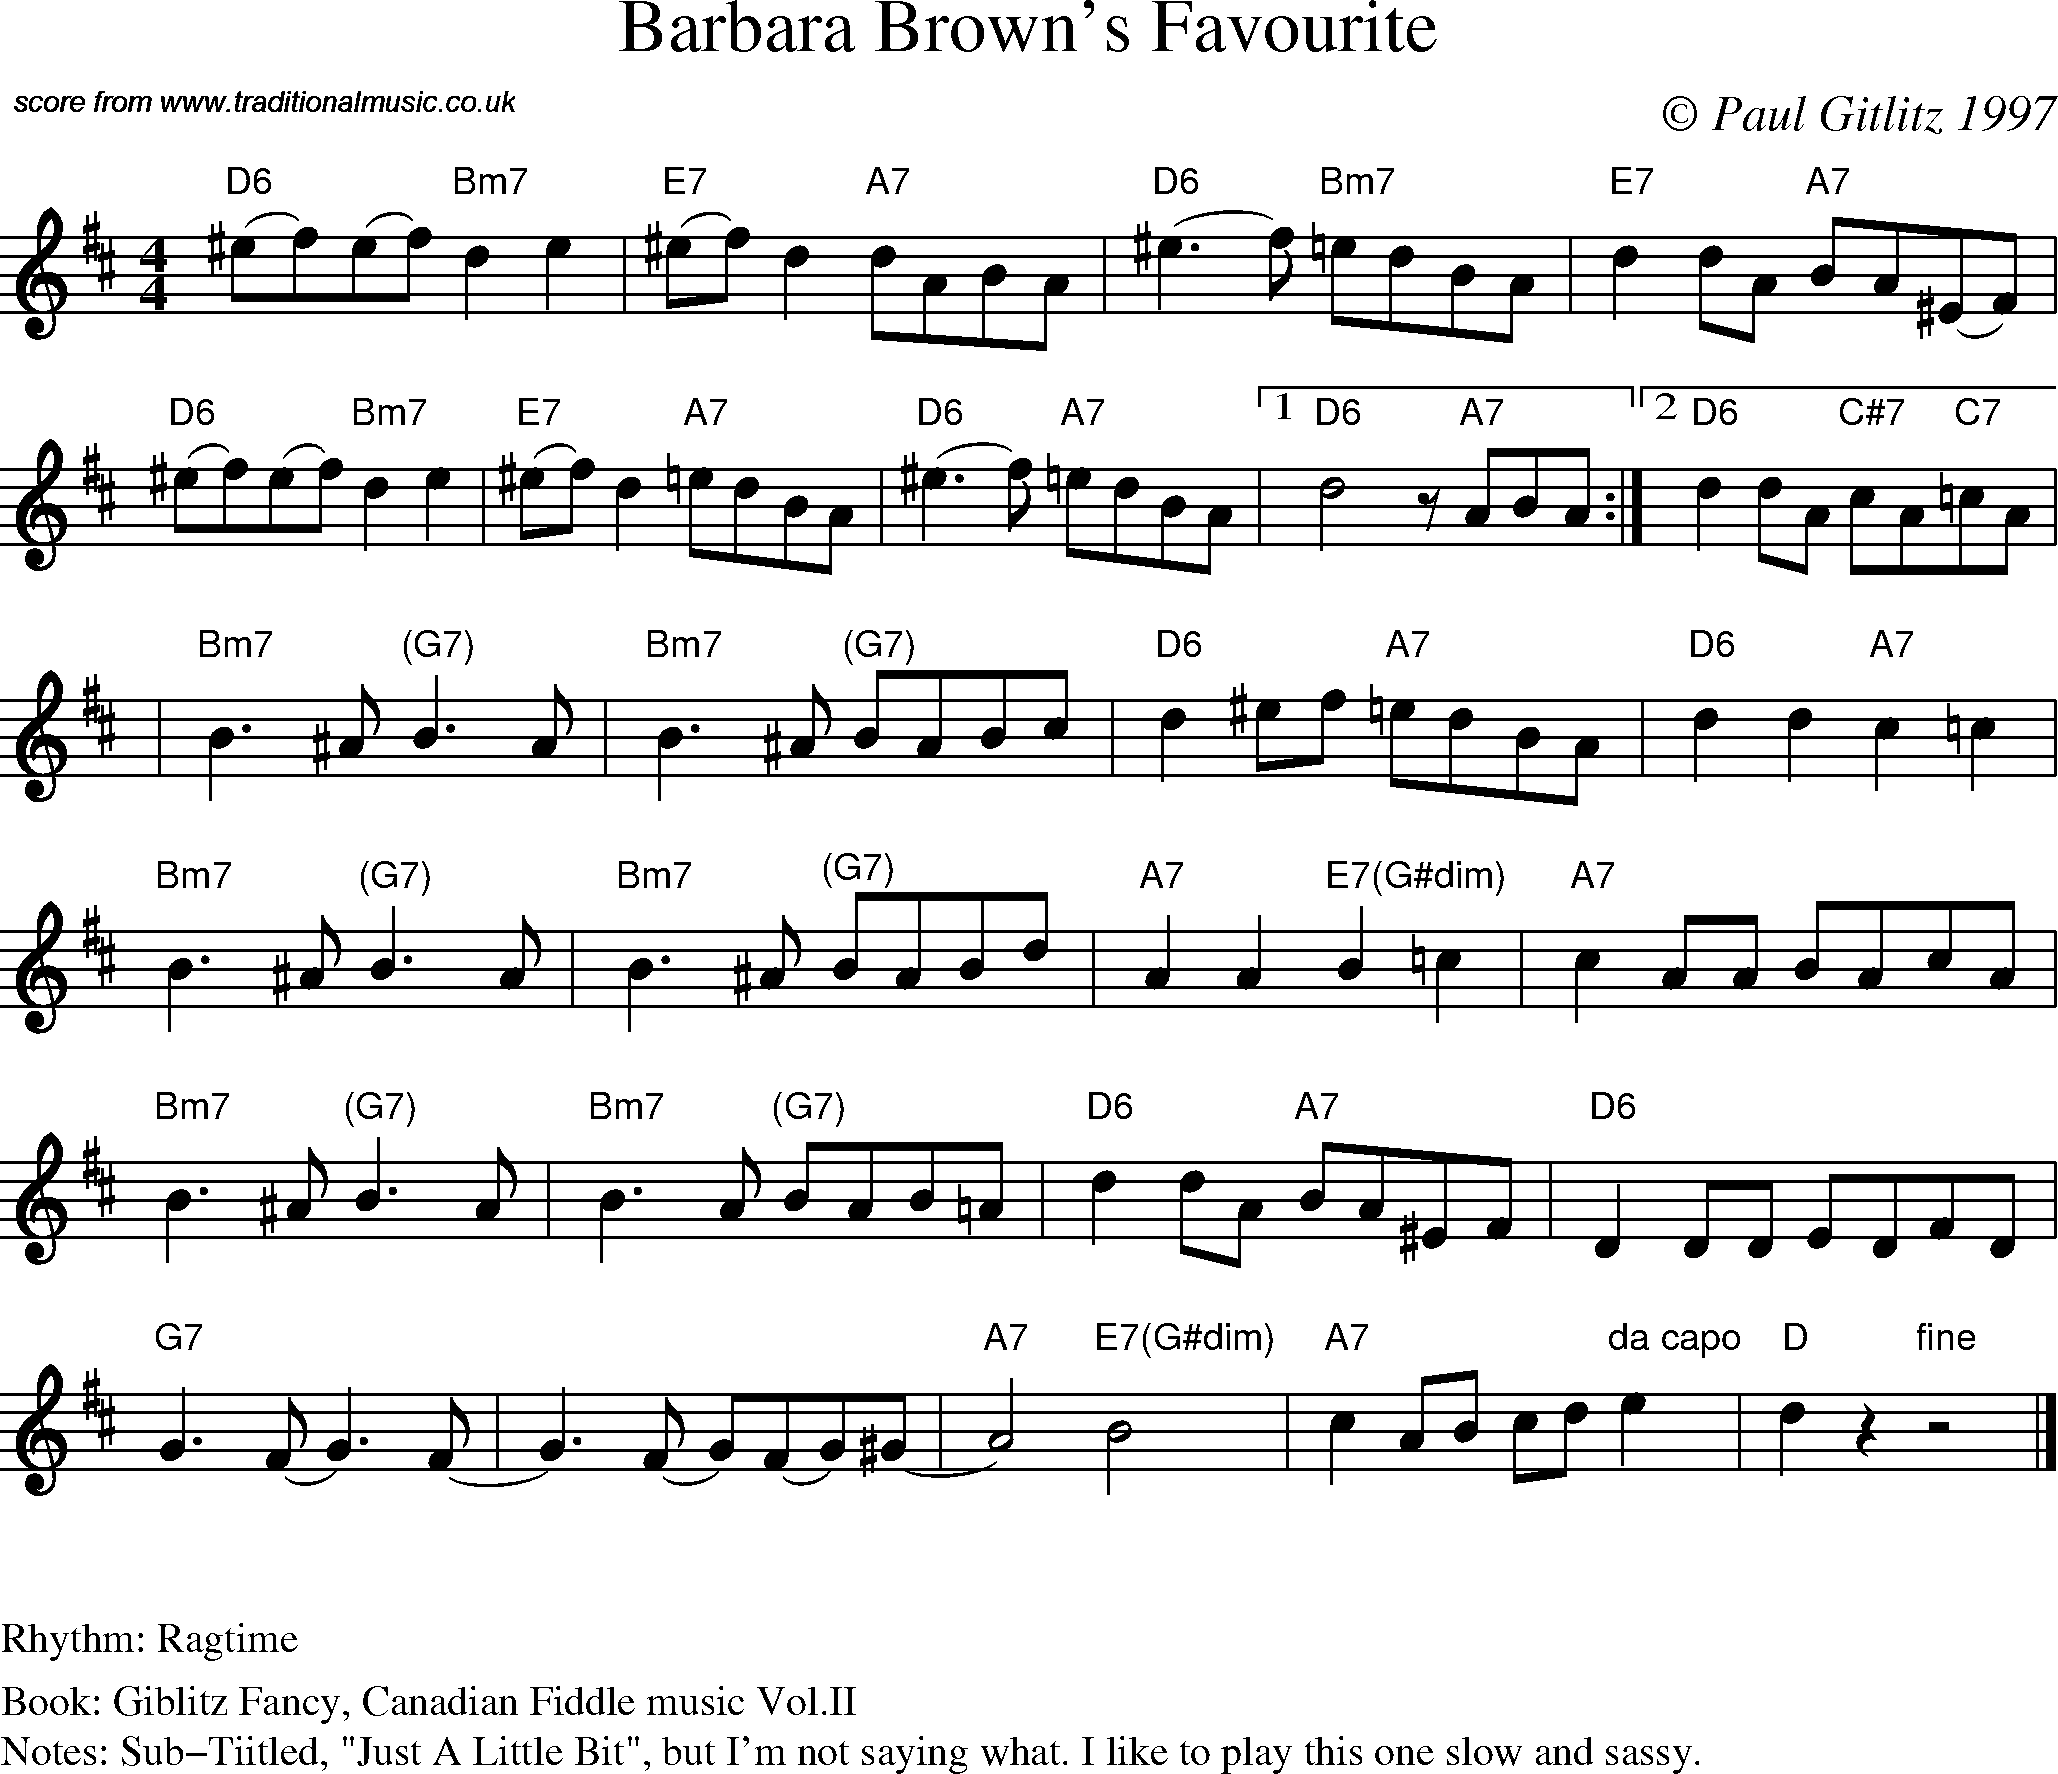 Sheet Music Score for Swing - Barbara Brown's Favorite